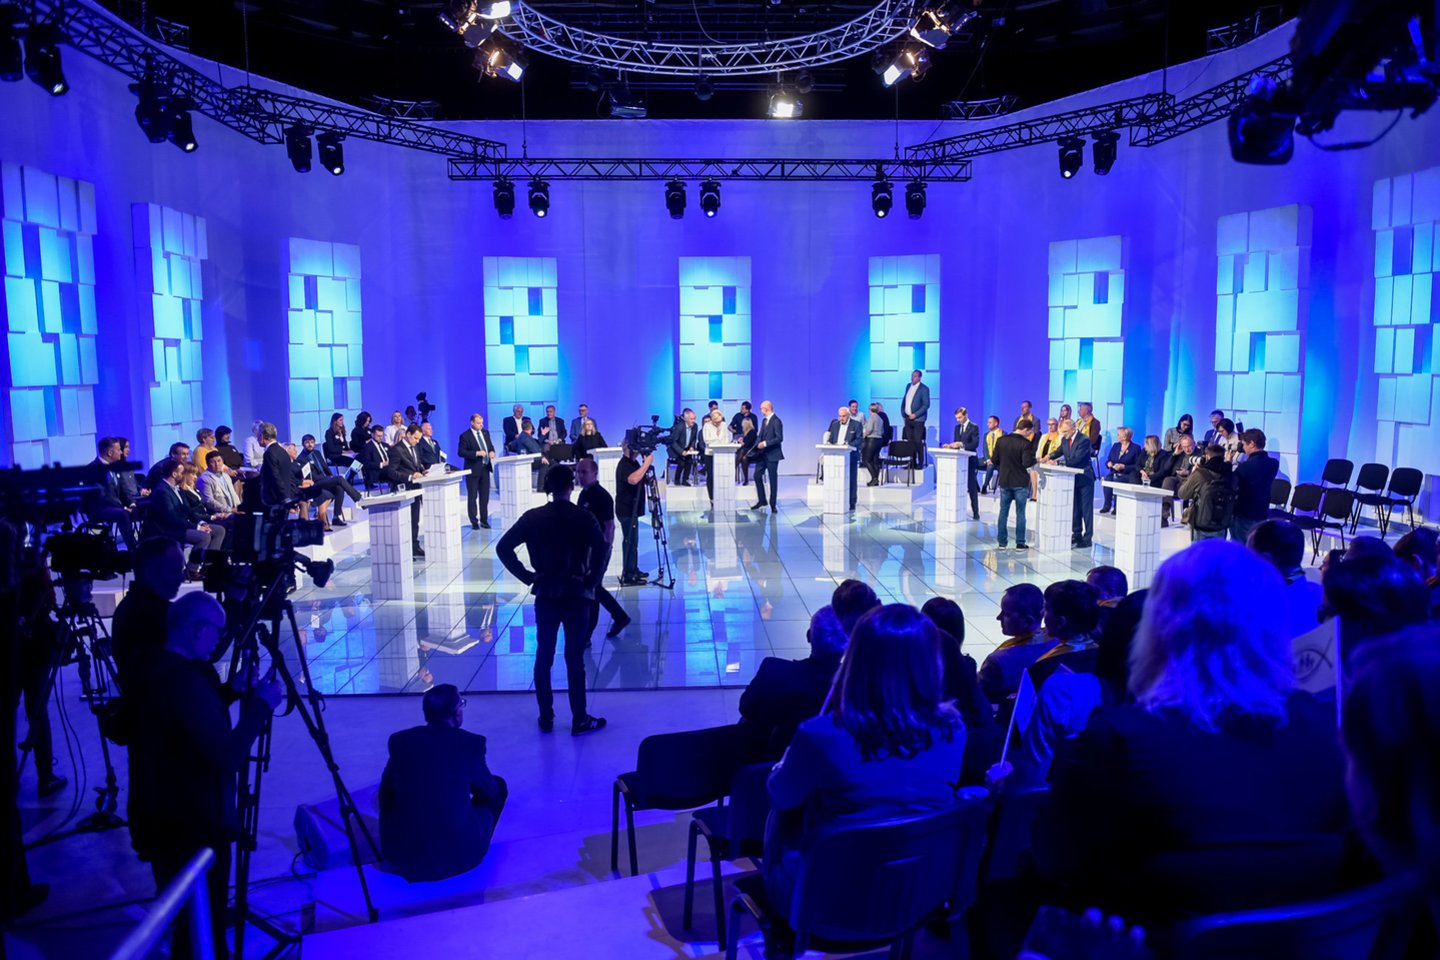  Ketvirtadienio debatuose susitiko 8 kandidatai į prezidentus iš 9. <br> D.Umbraso nuotr. 